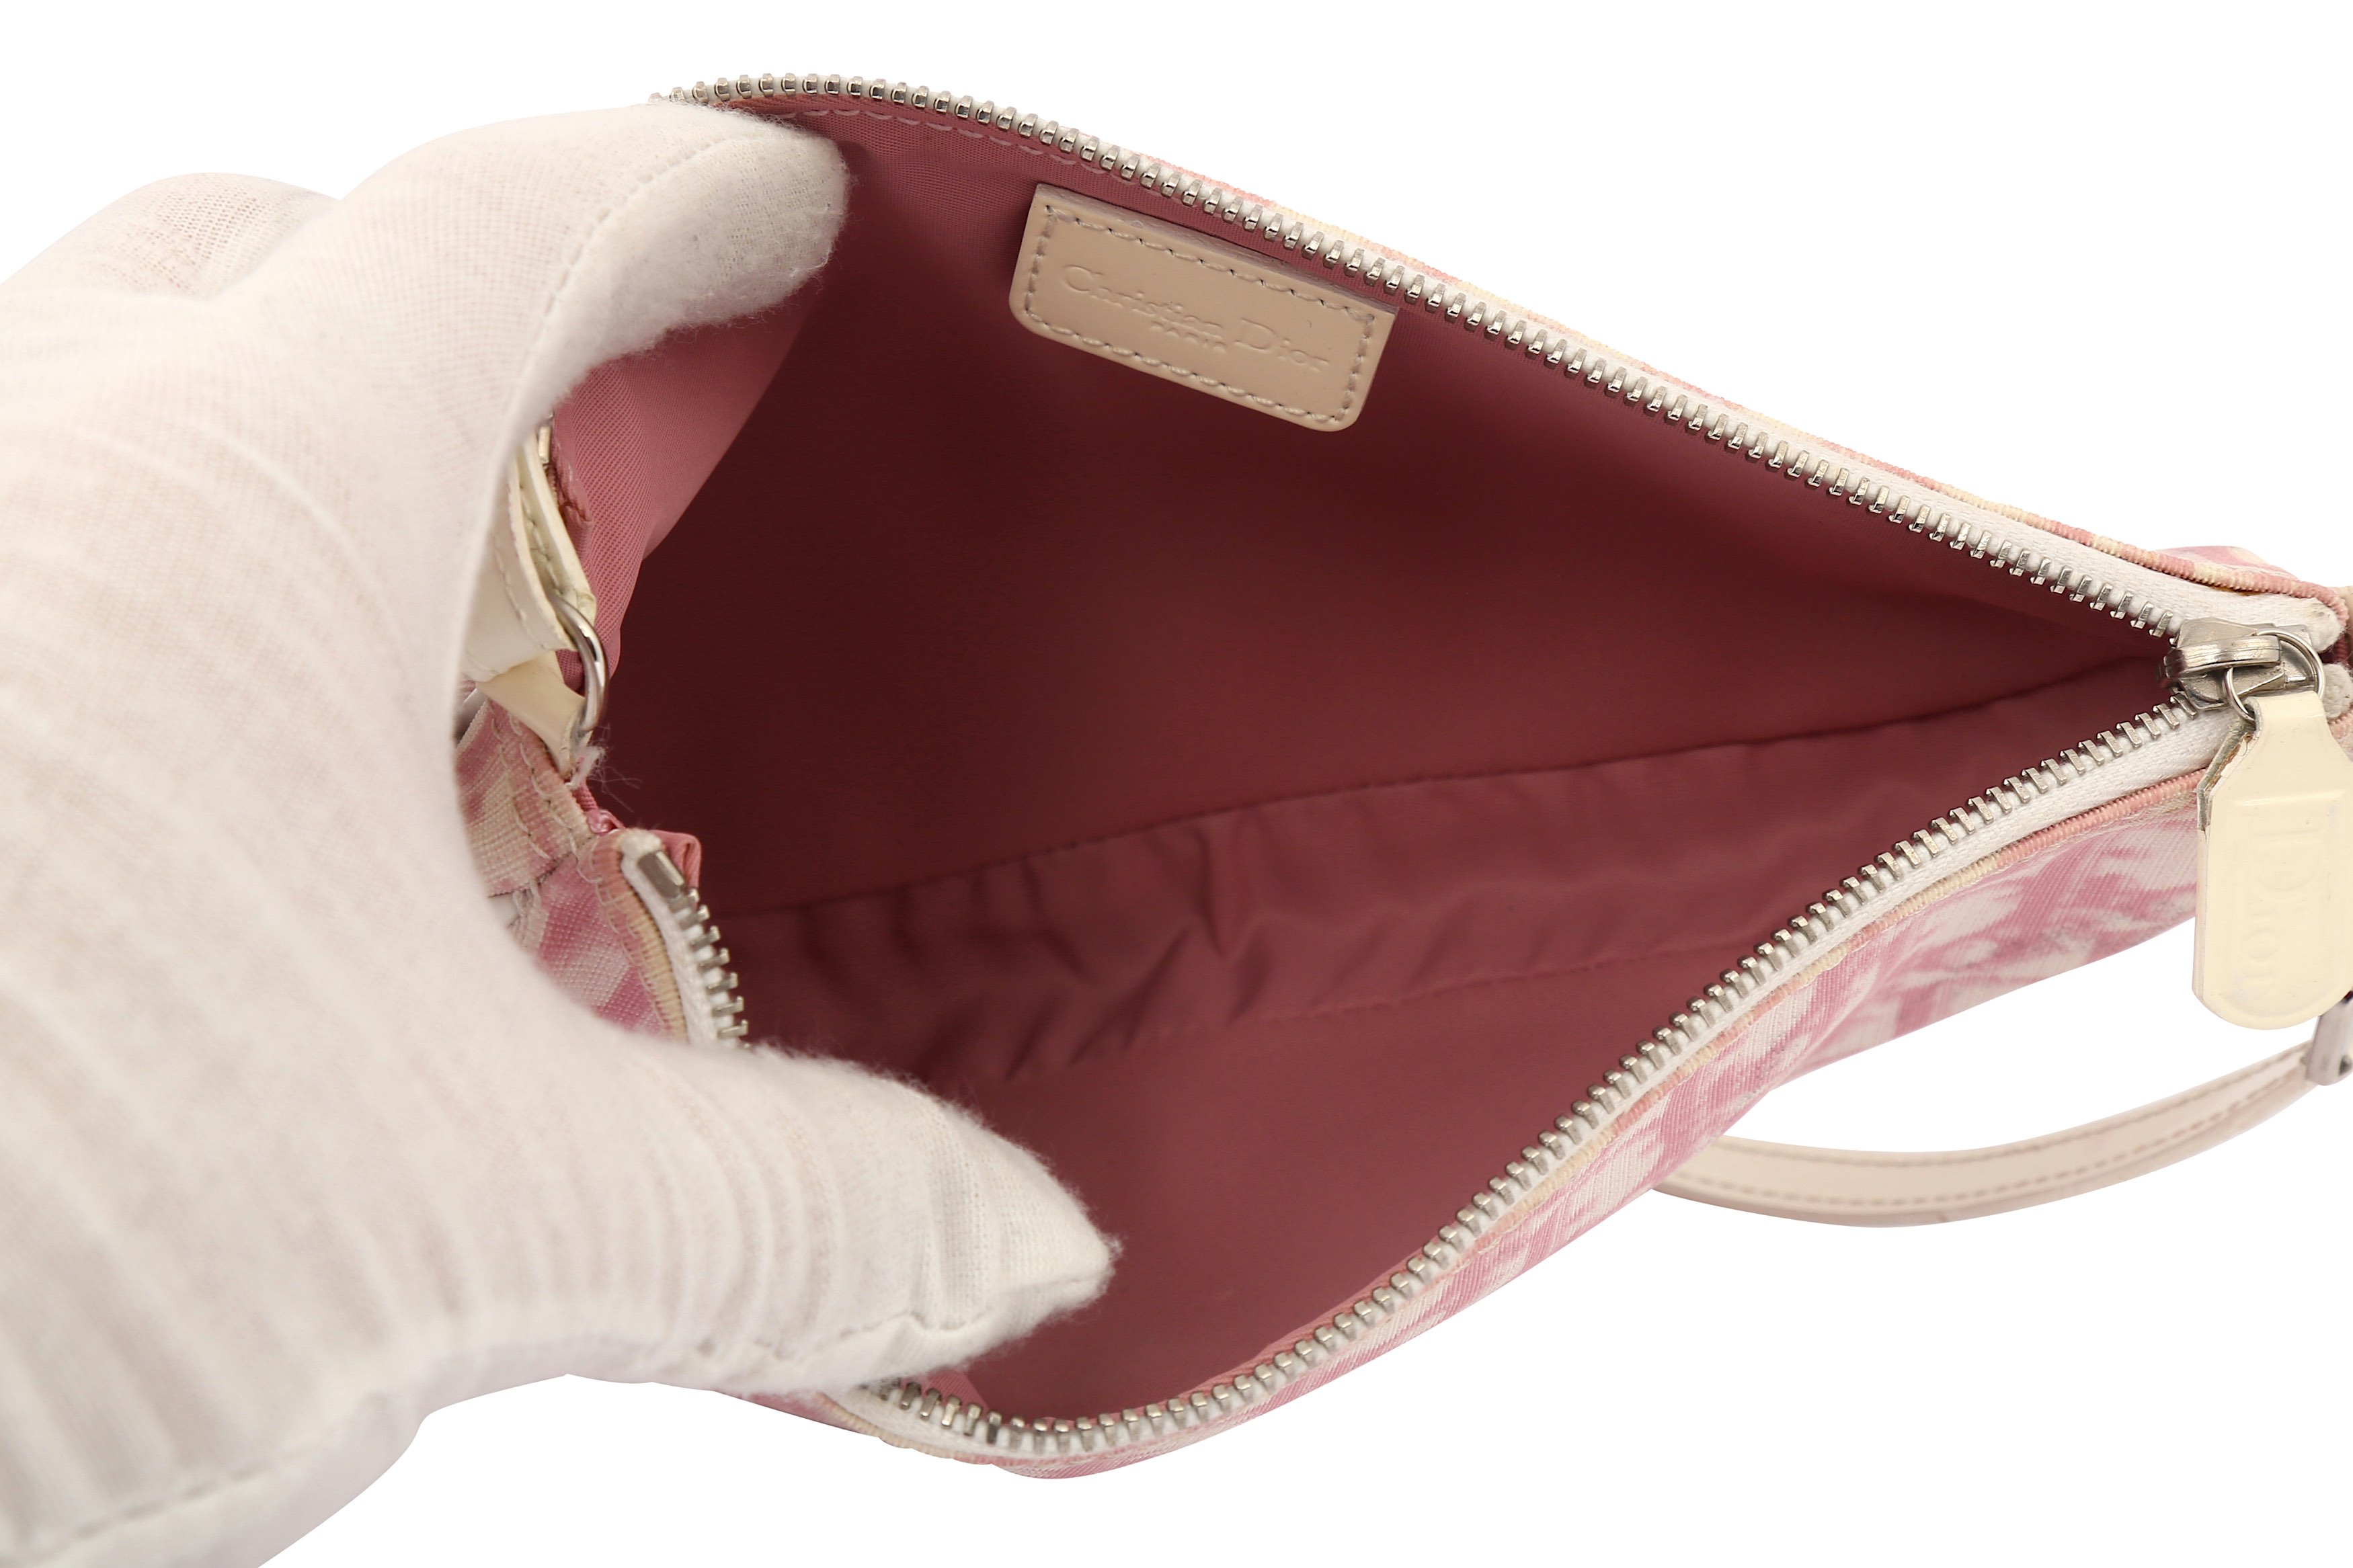 Christian Dior Pink Diorissimo Saddle Bag - Image 6 of 6